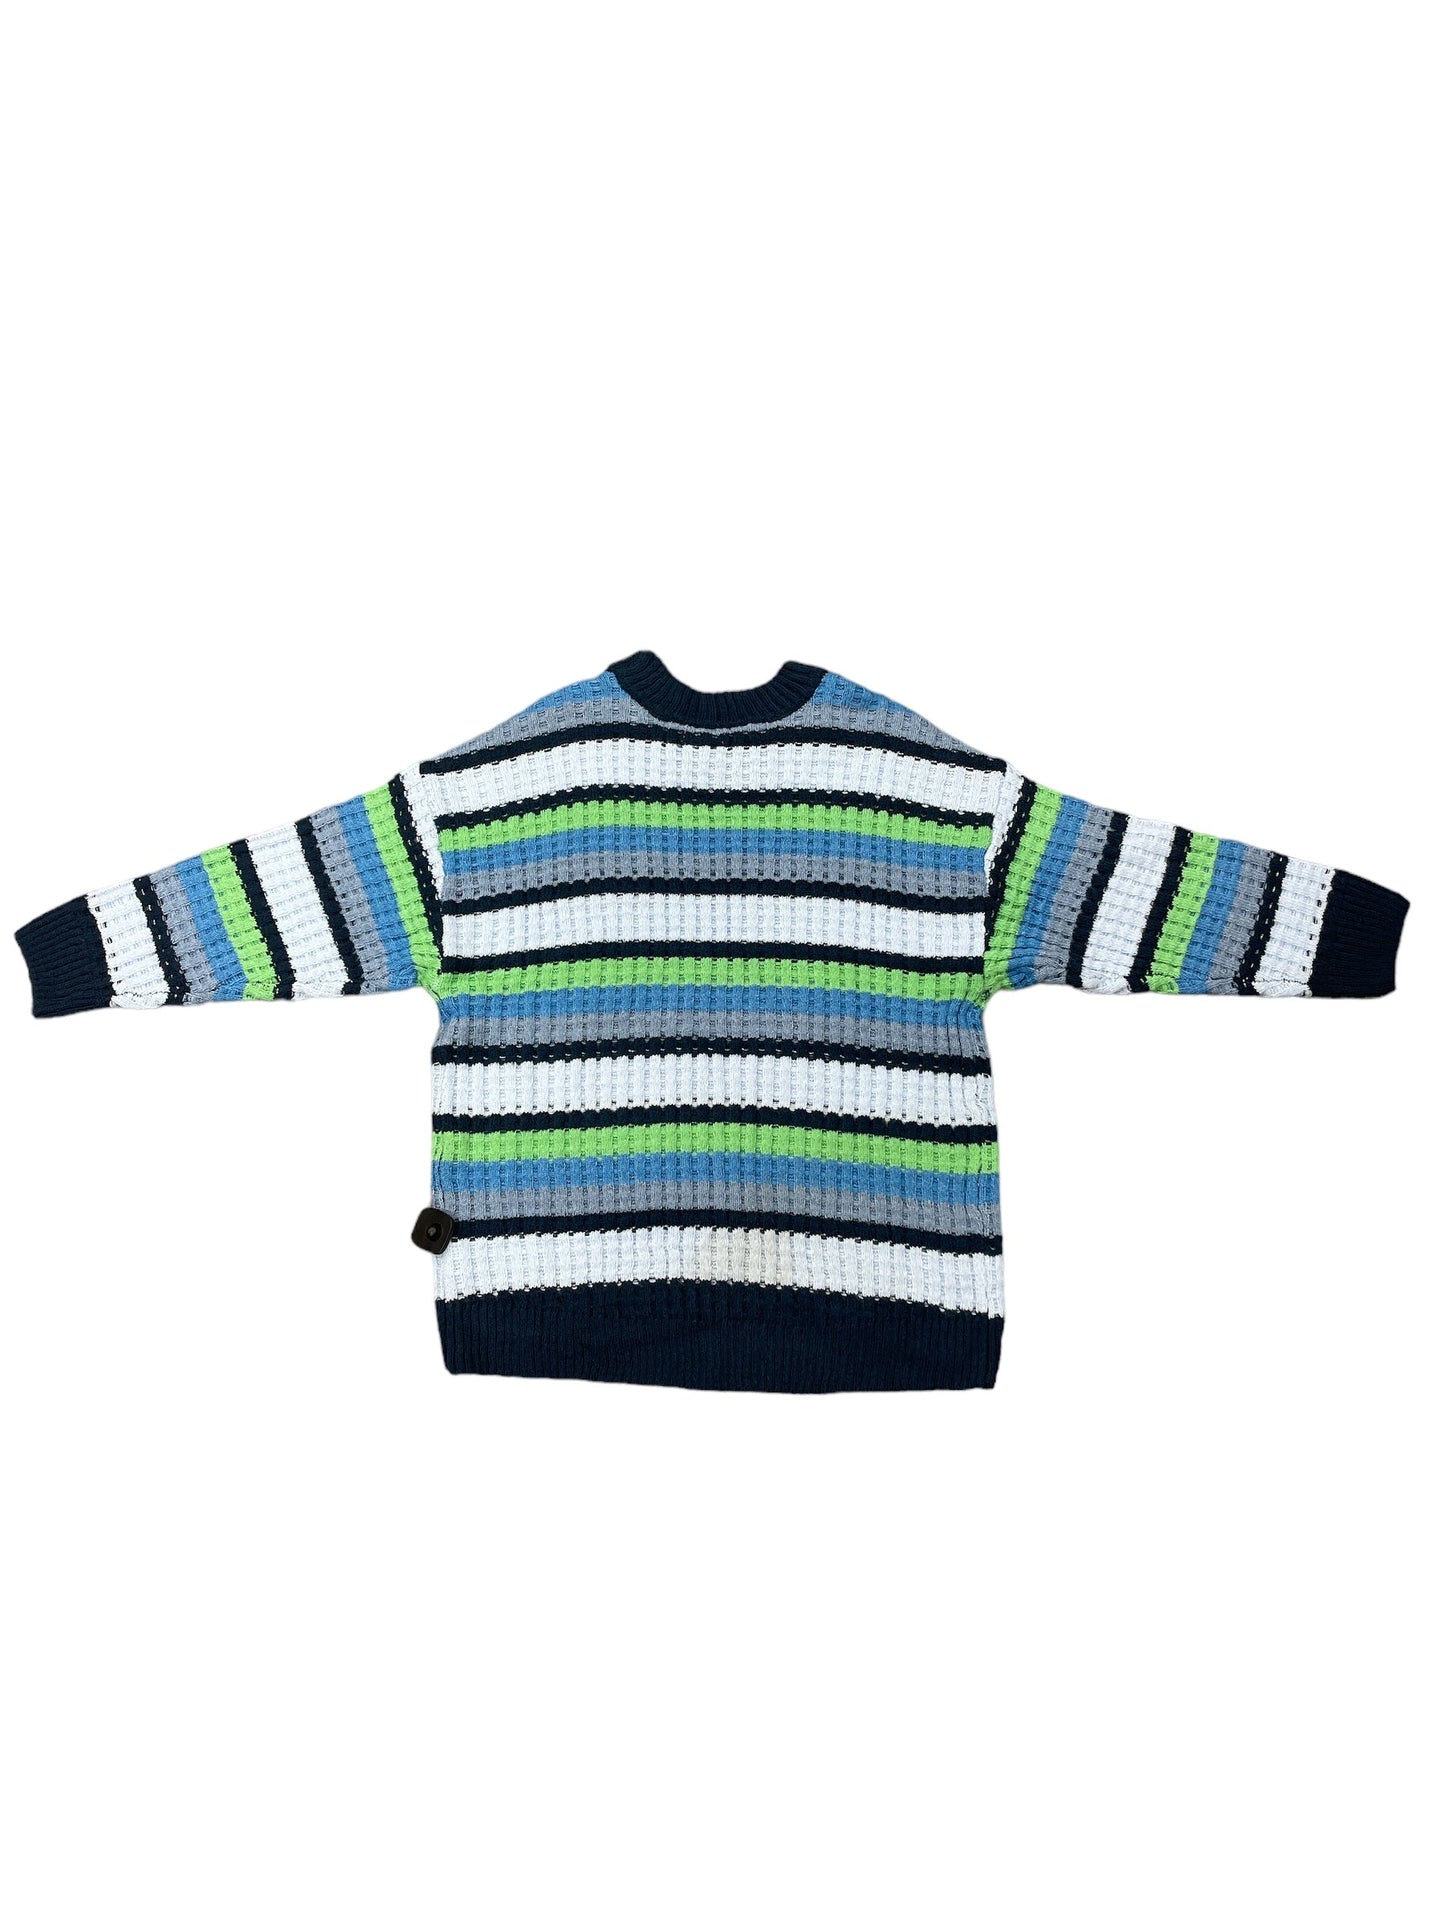 Sweater By So  Size: Xxl